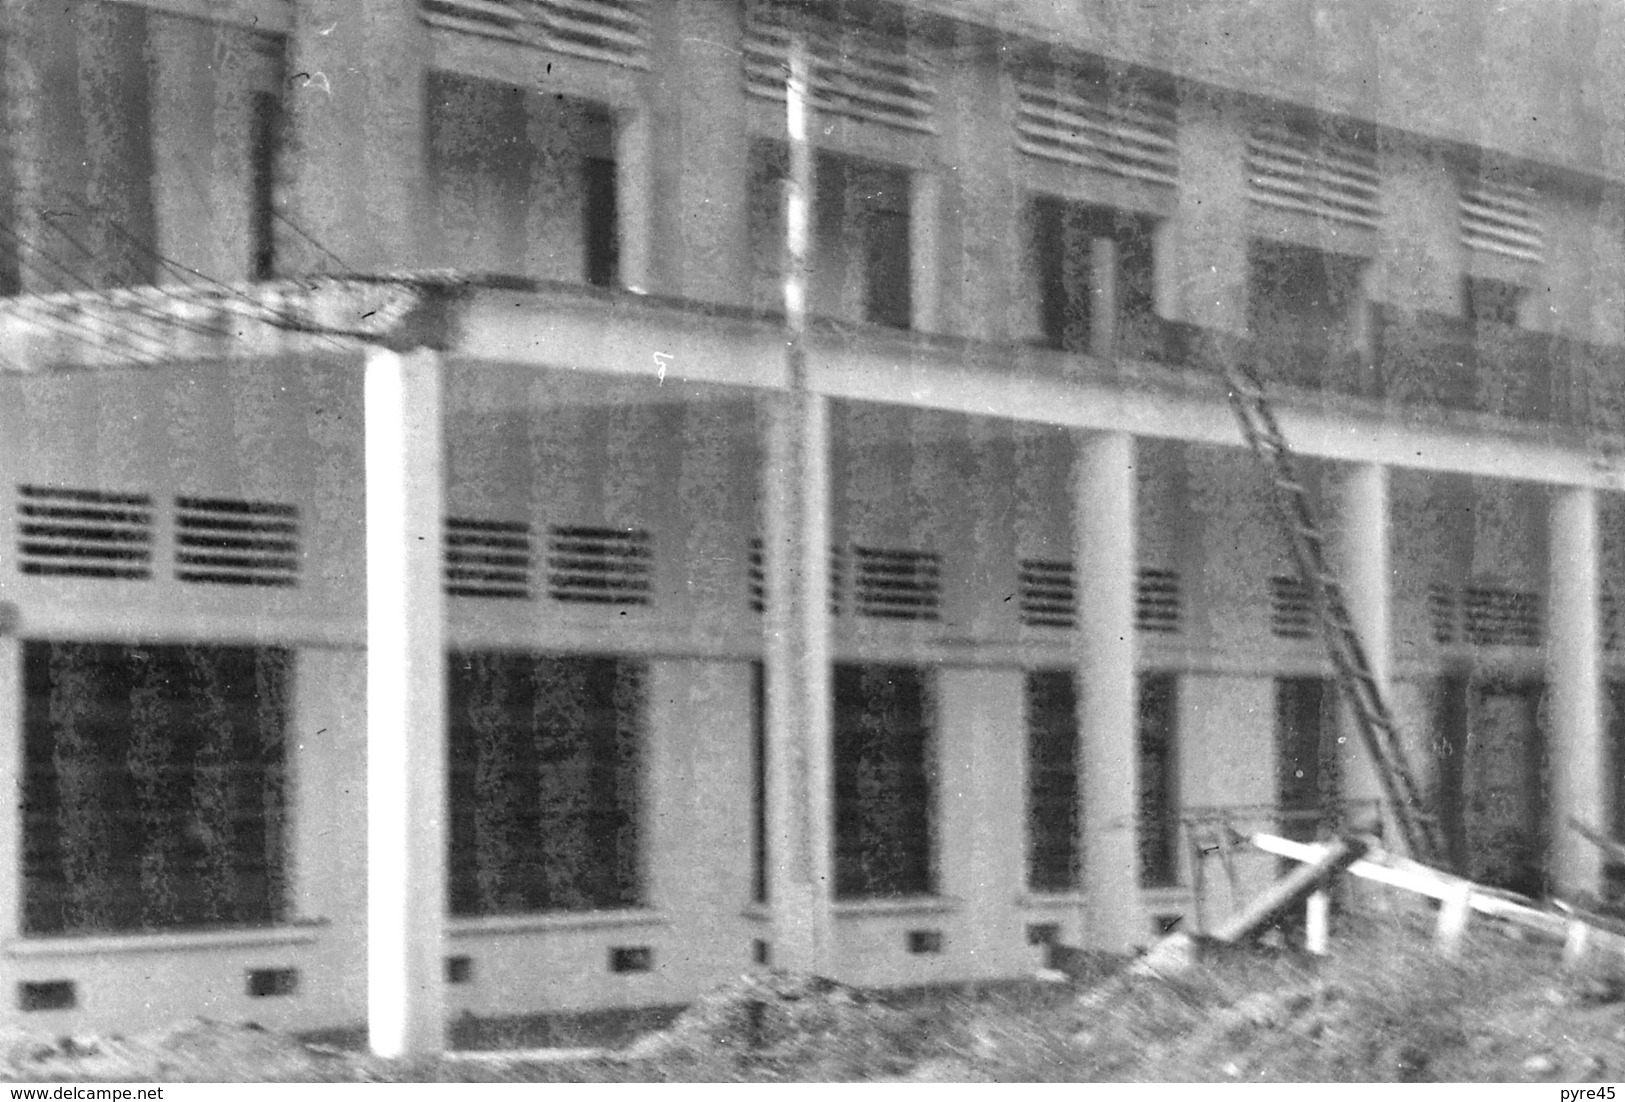 Lot de 14  négatifs " Garage au Cameroun 1949, 1950 " ( 9 x 6 cm, vue partielle )